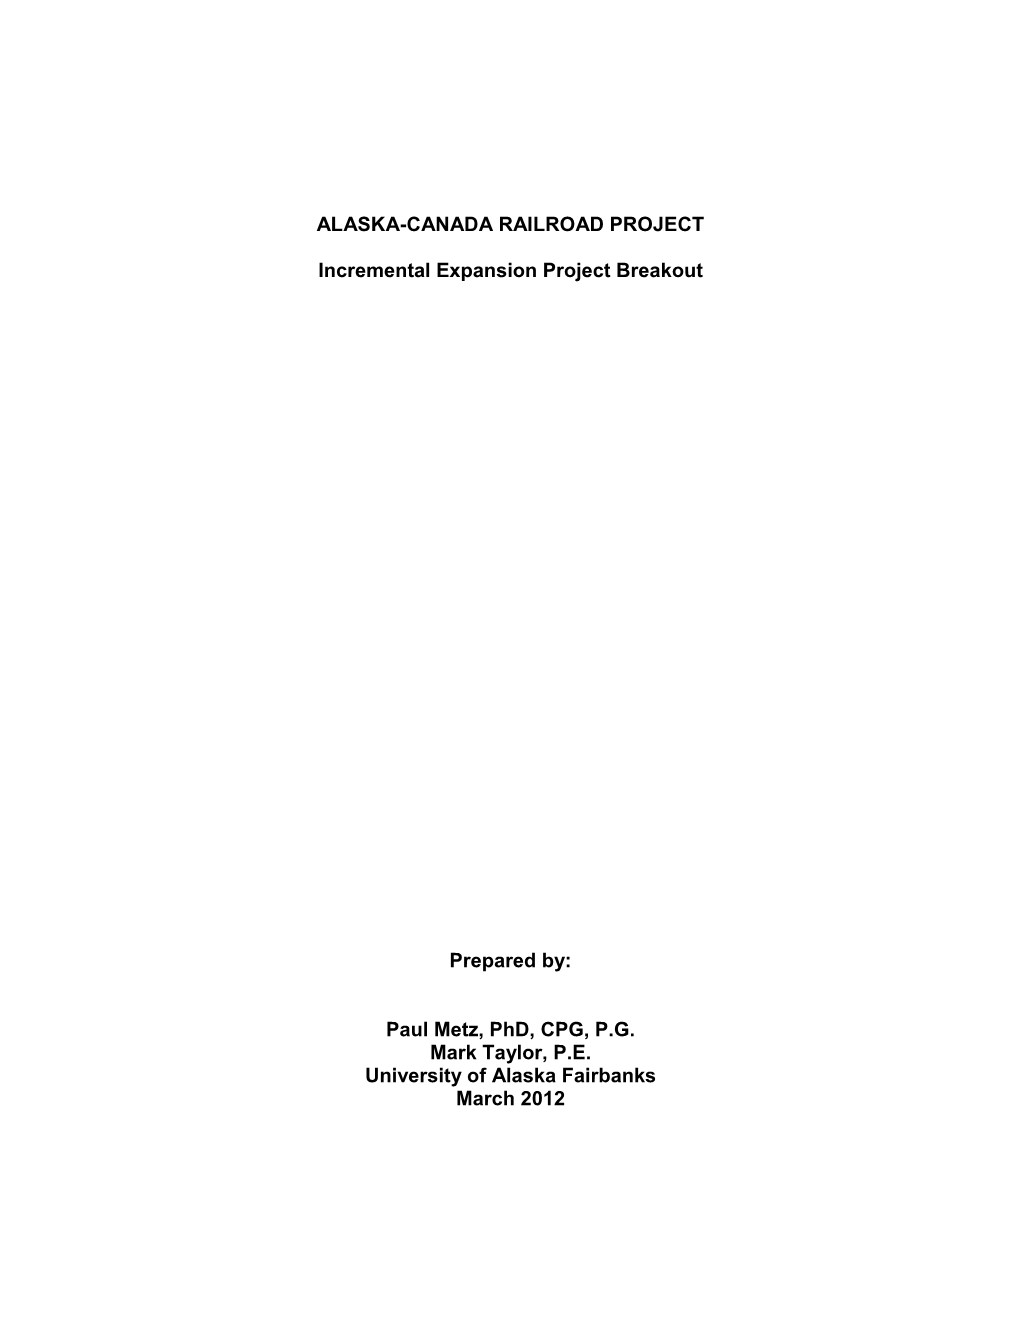 Alaska-Canada Railroad Project, March 2012